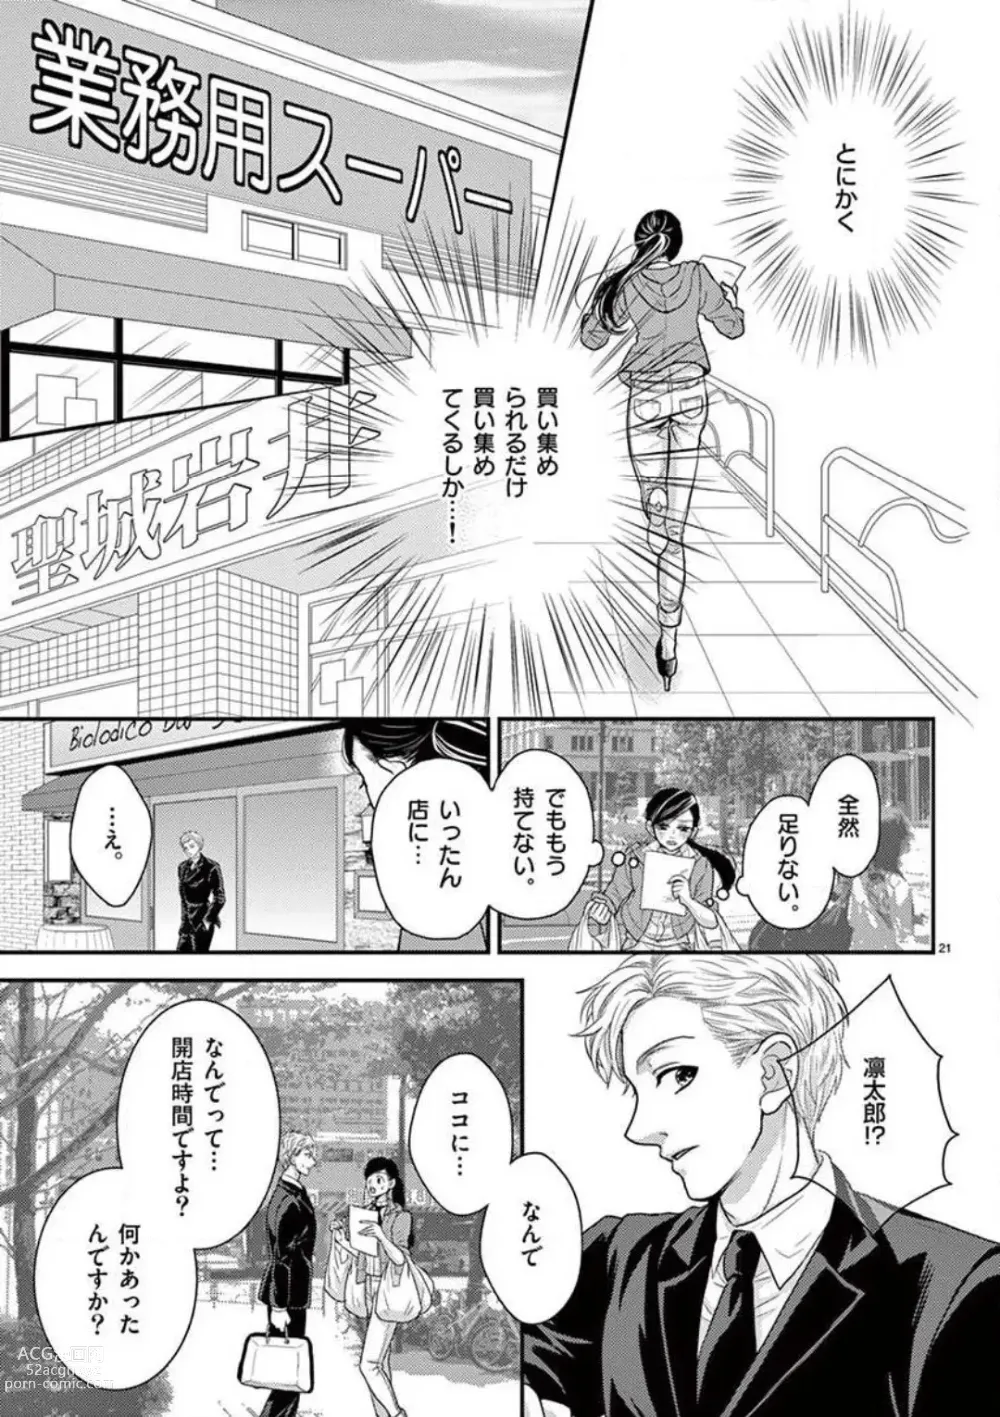 Page 21 of manga Yajū Suitchi ON!〜 Junjō Wanko wa Hageshi Sugi 〜